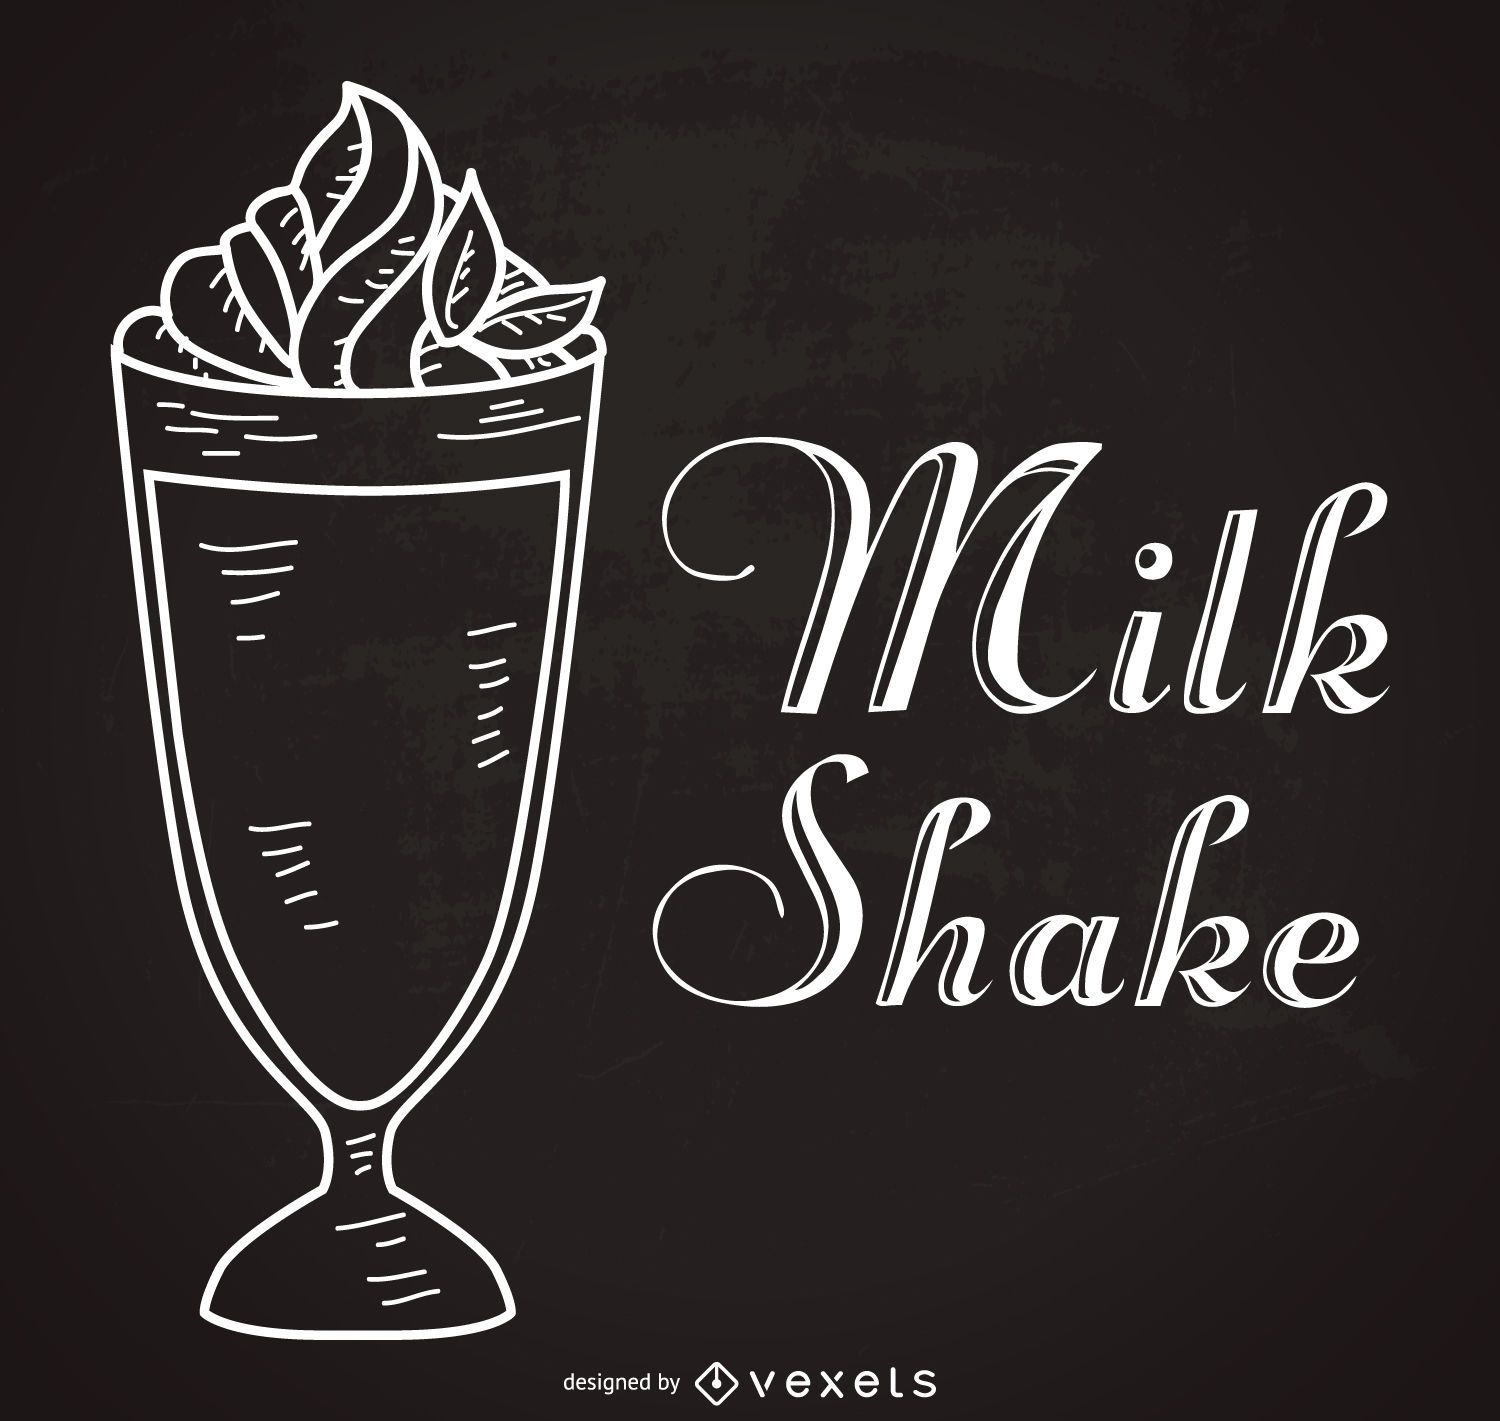 Vintage milkshake illustration and quote